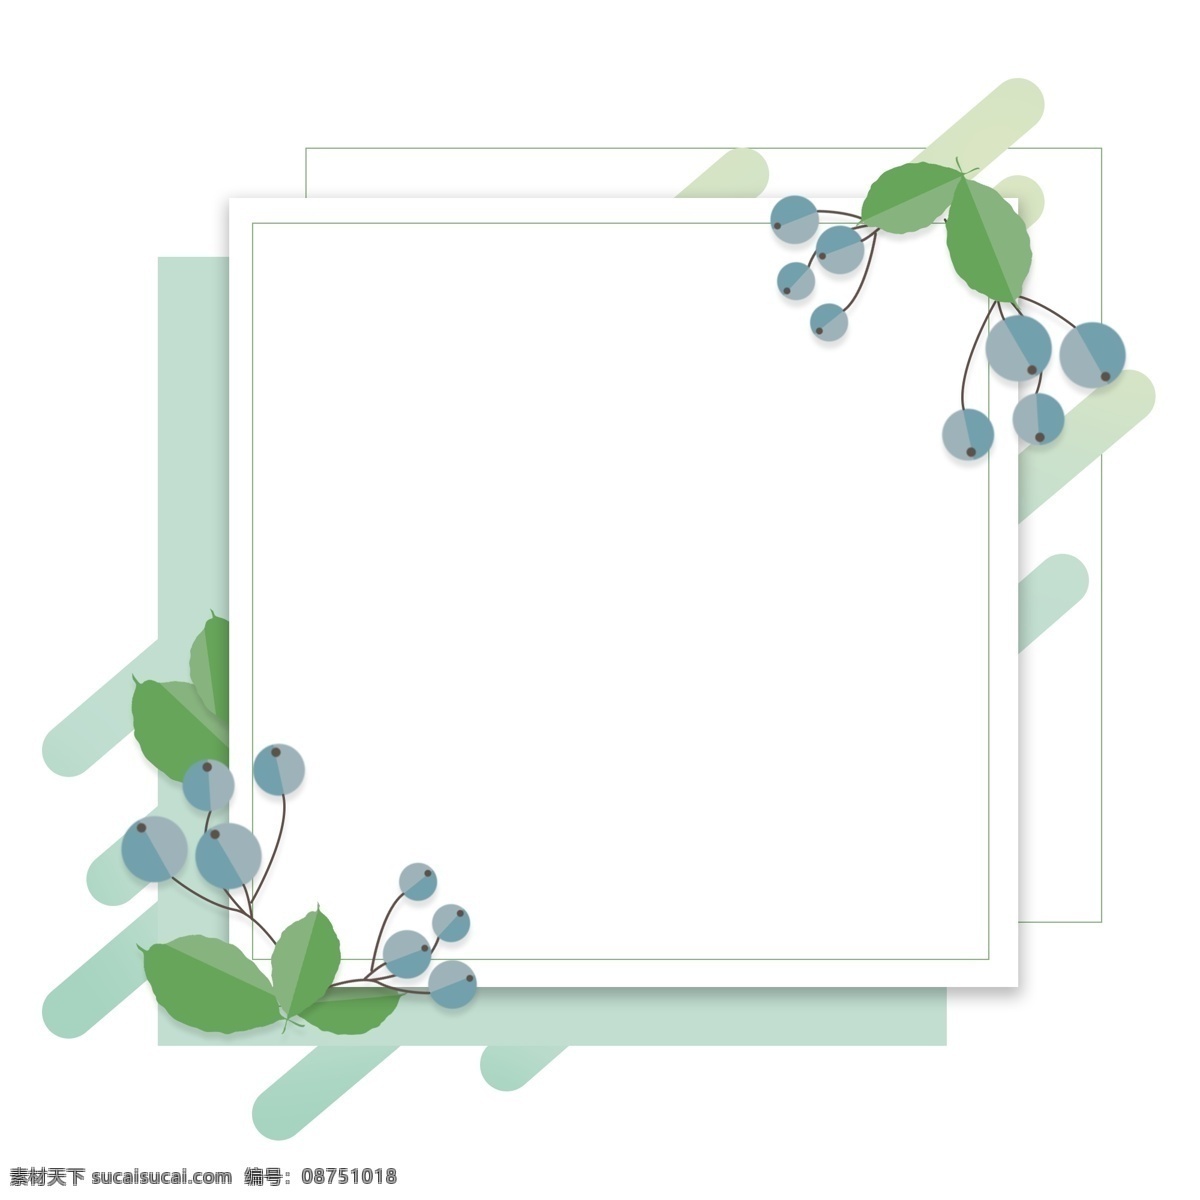 薄荷 绿 手绘 折纸 花卉 植物 卡通 边框 对话框 薄荷绿